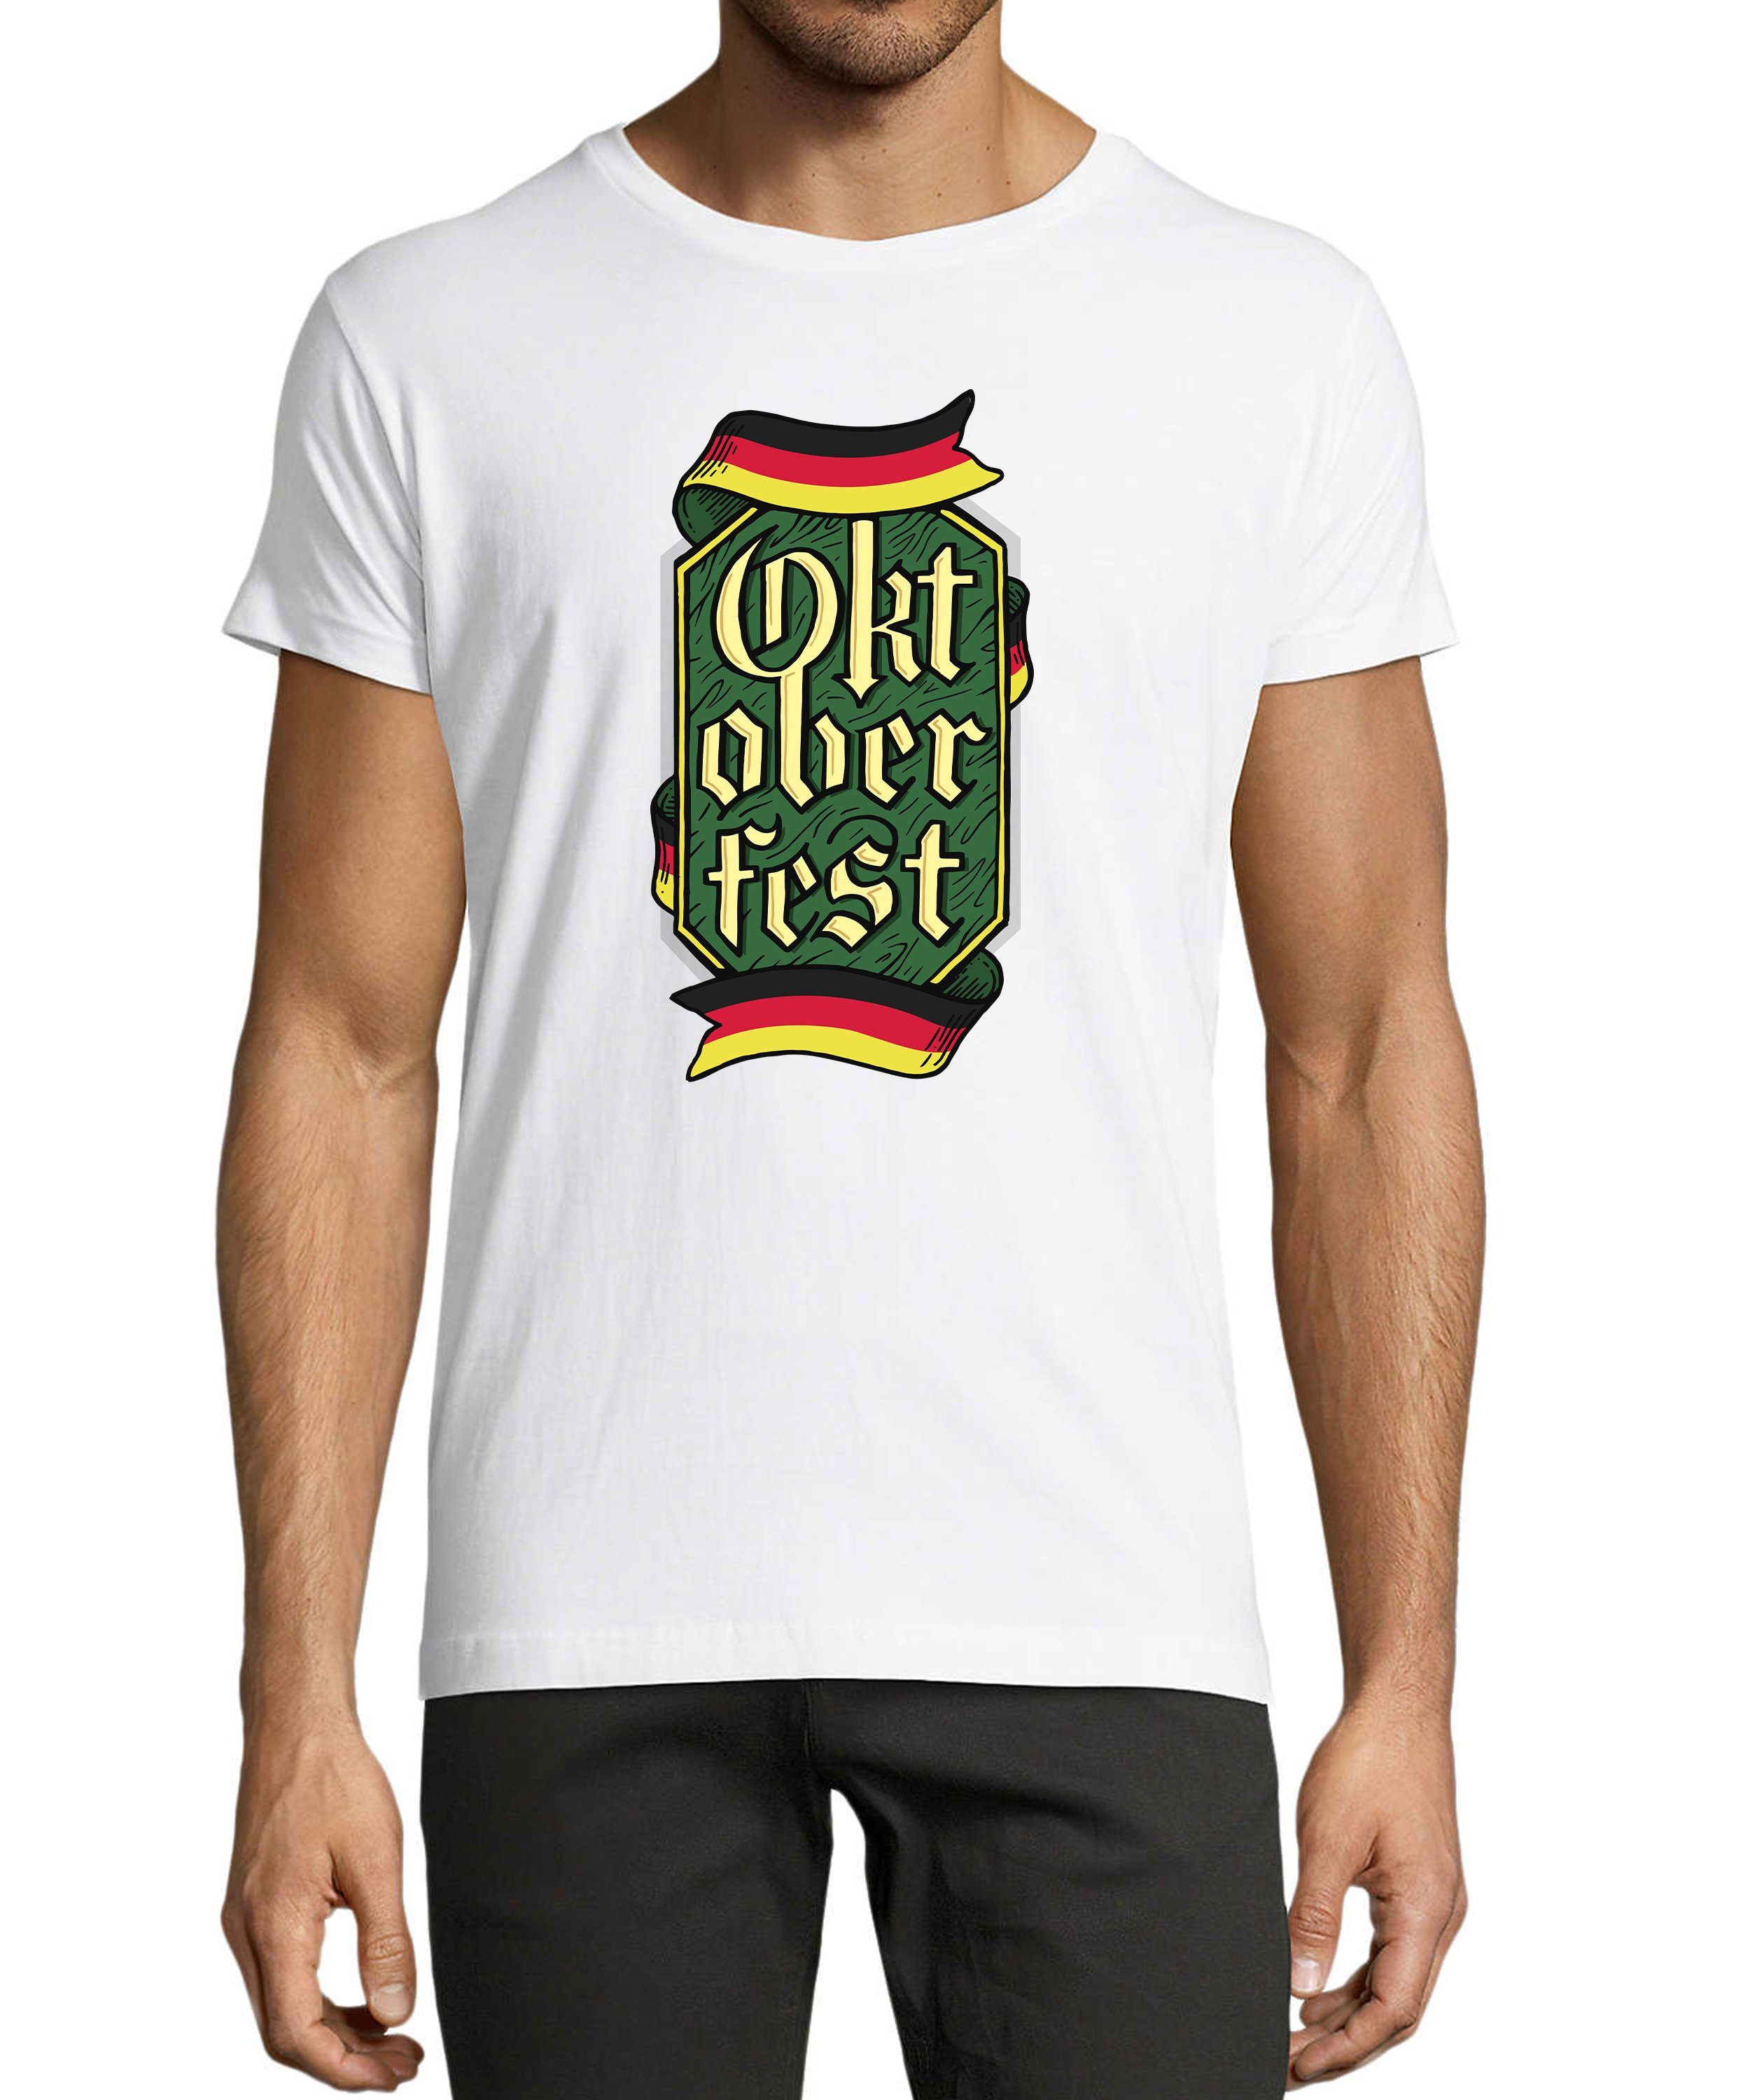 MyDesign24 T-Shirt Herren Party Shirt - Trinkshirt Oktoberfest T-Shirt Baumwollshirt mit Aufdruck Regular Fit, i323 weiss | Trachtenshirts